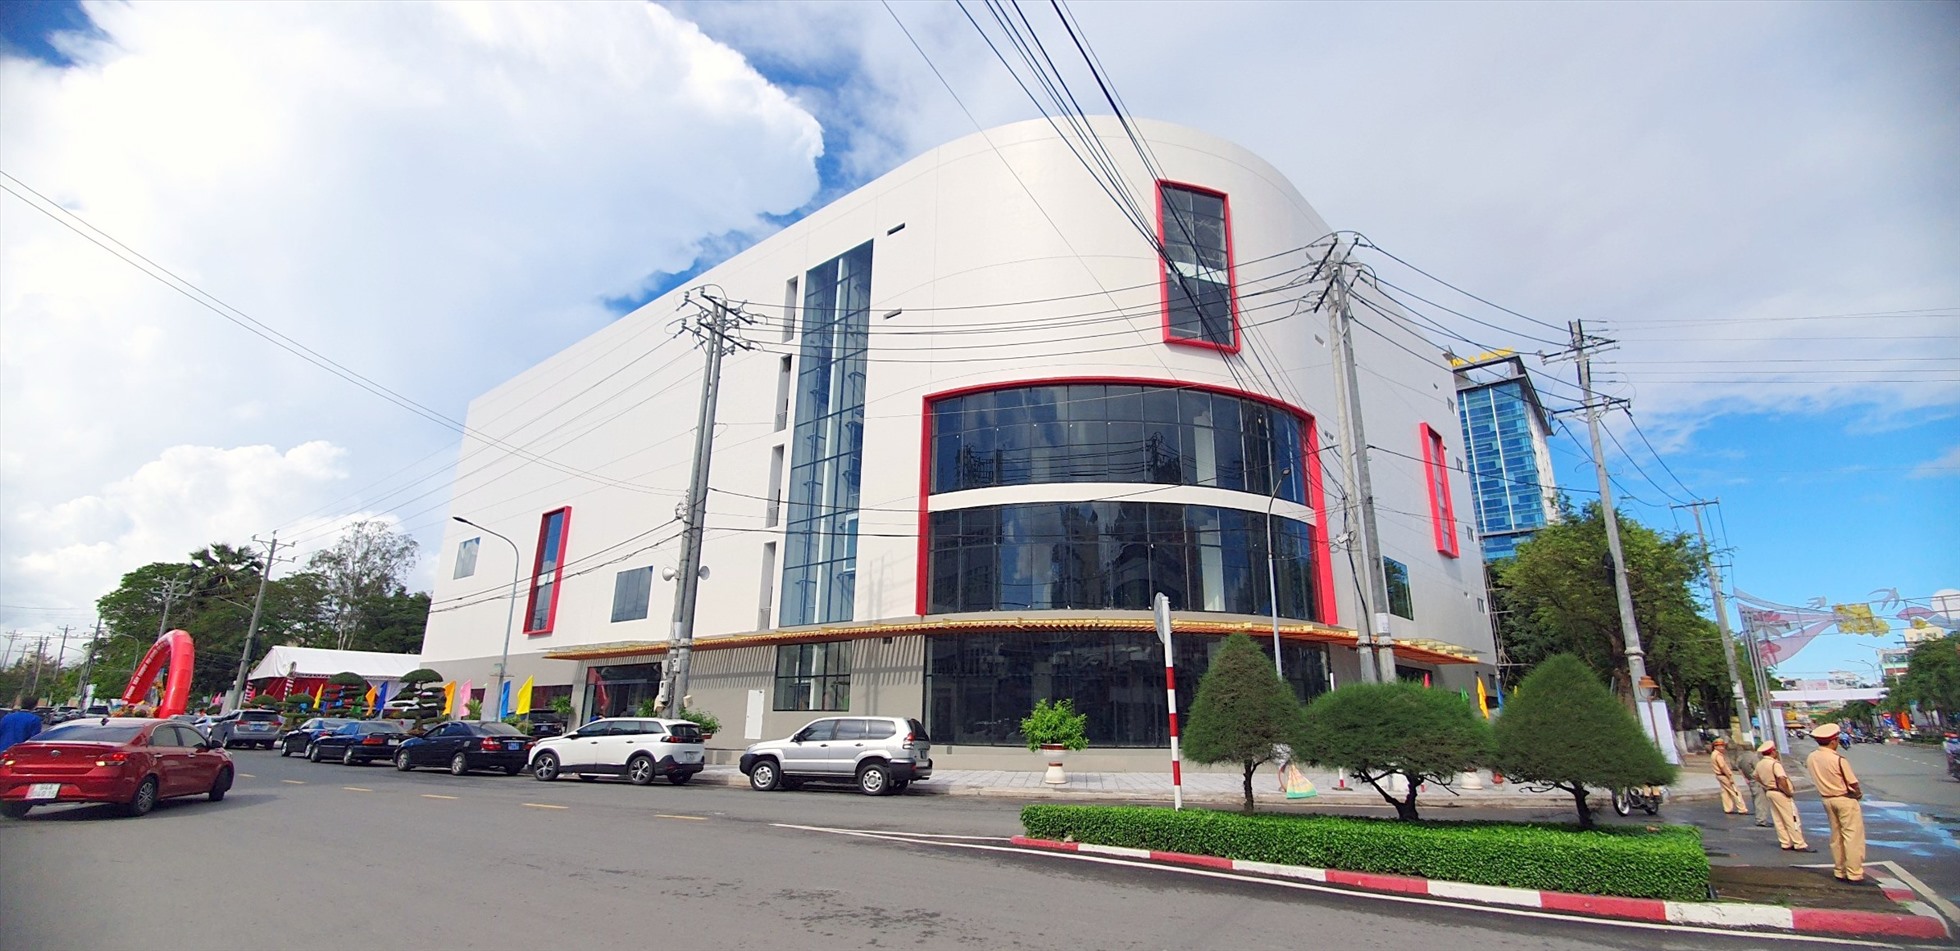 Trung tâm thương mại Nguyễn Kim Bạc Liêu nằm ngay trung tâm thành phố Bạc Liêu. ảnh: Nhật Hồ